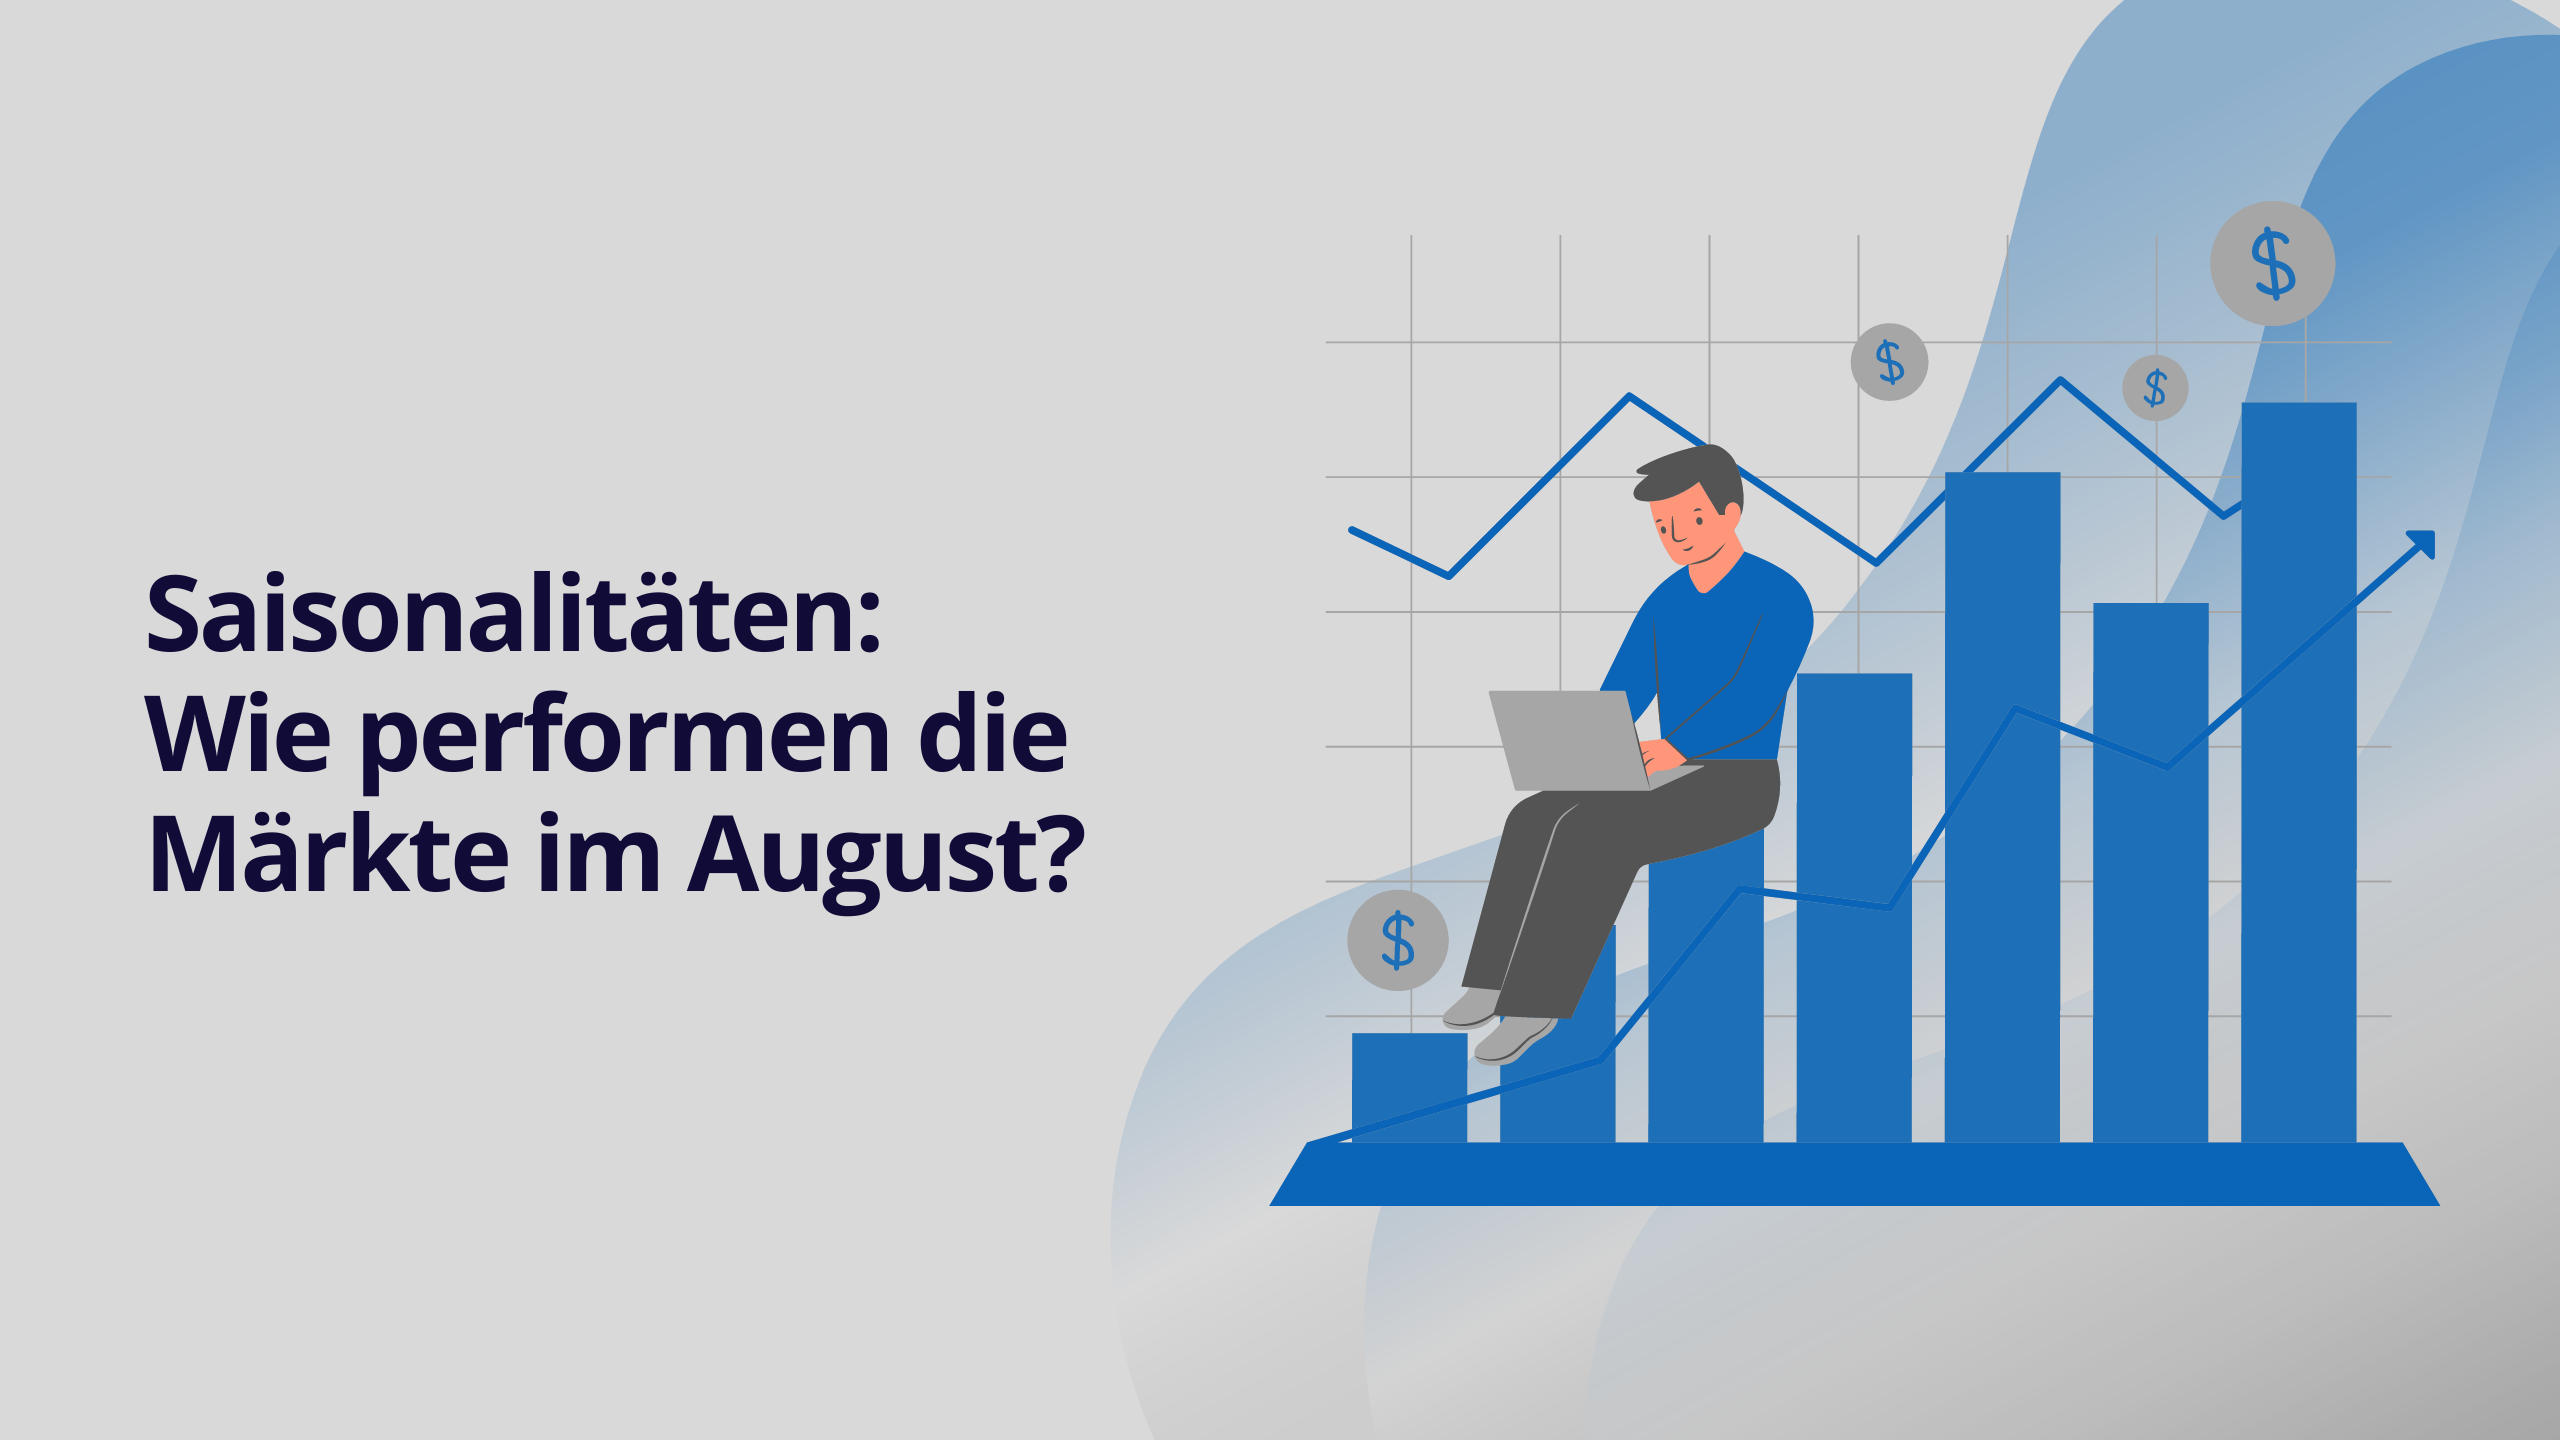 Saisonalitäten: Wie performen die Märkte im August?